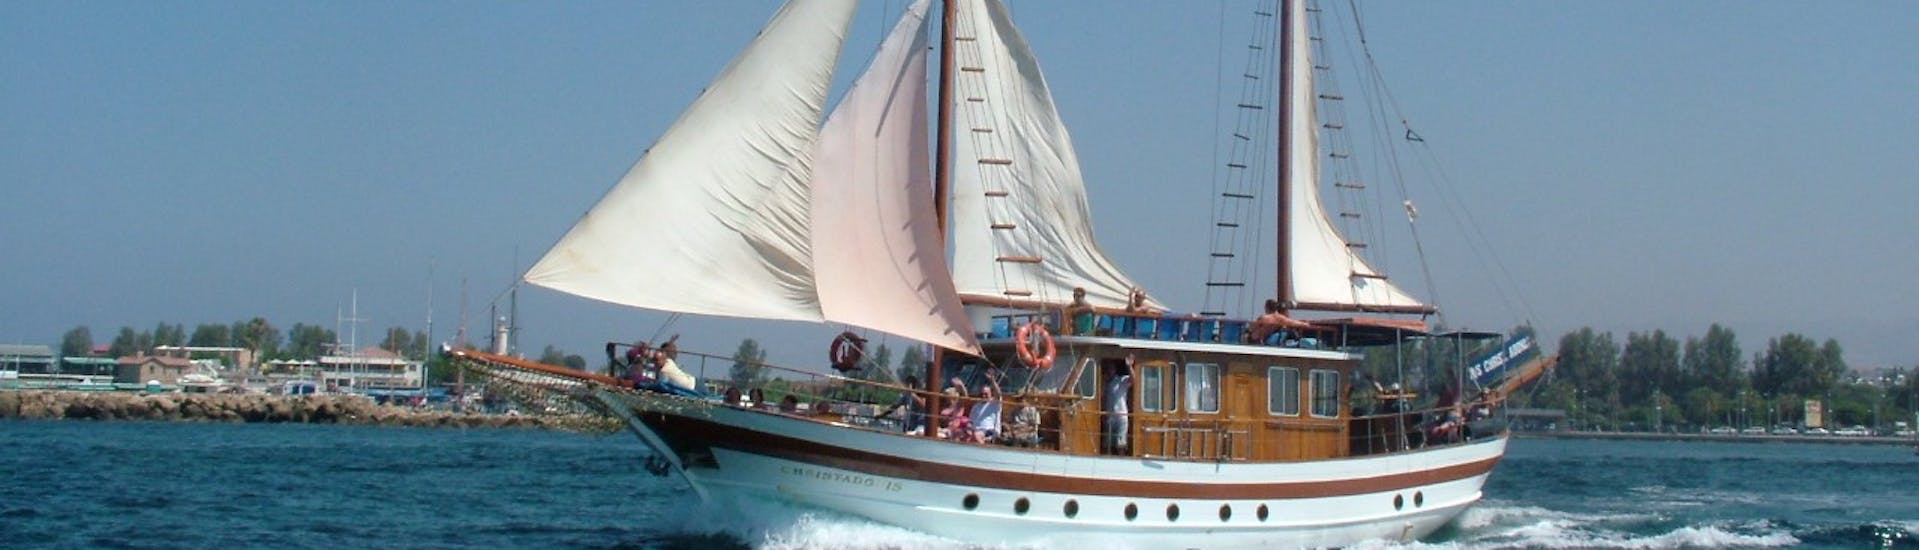 Photo prise pendant la balade en bateau à voile de Paphos à Coral Bay ou Timi.